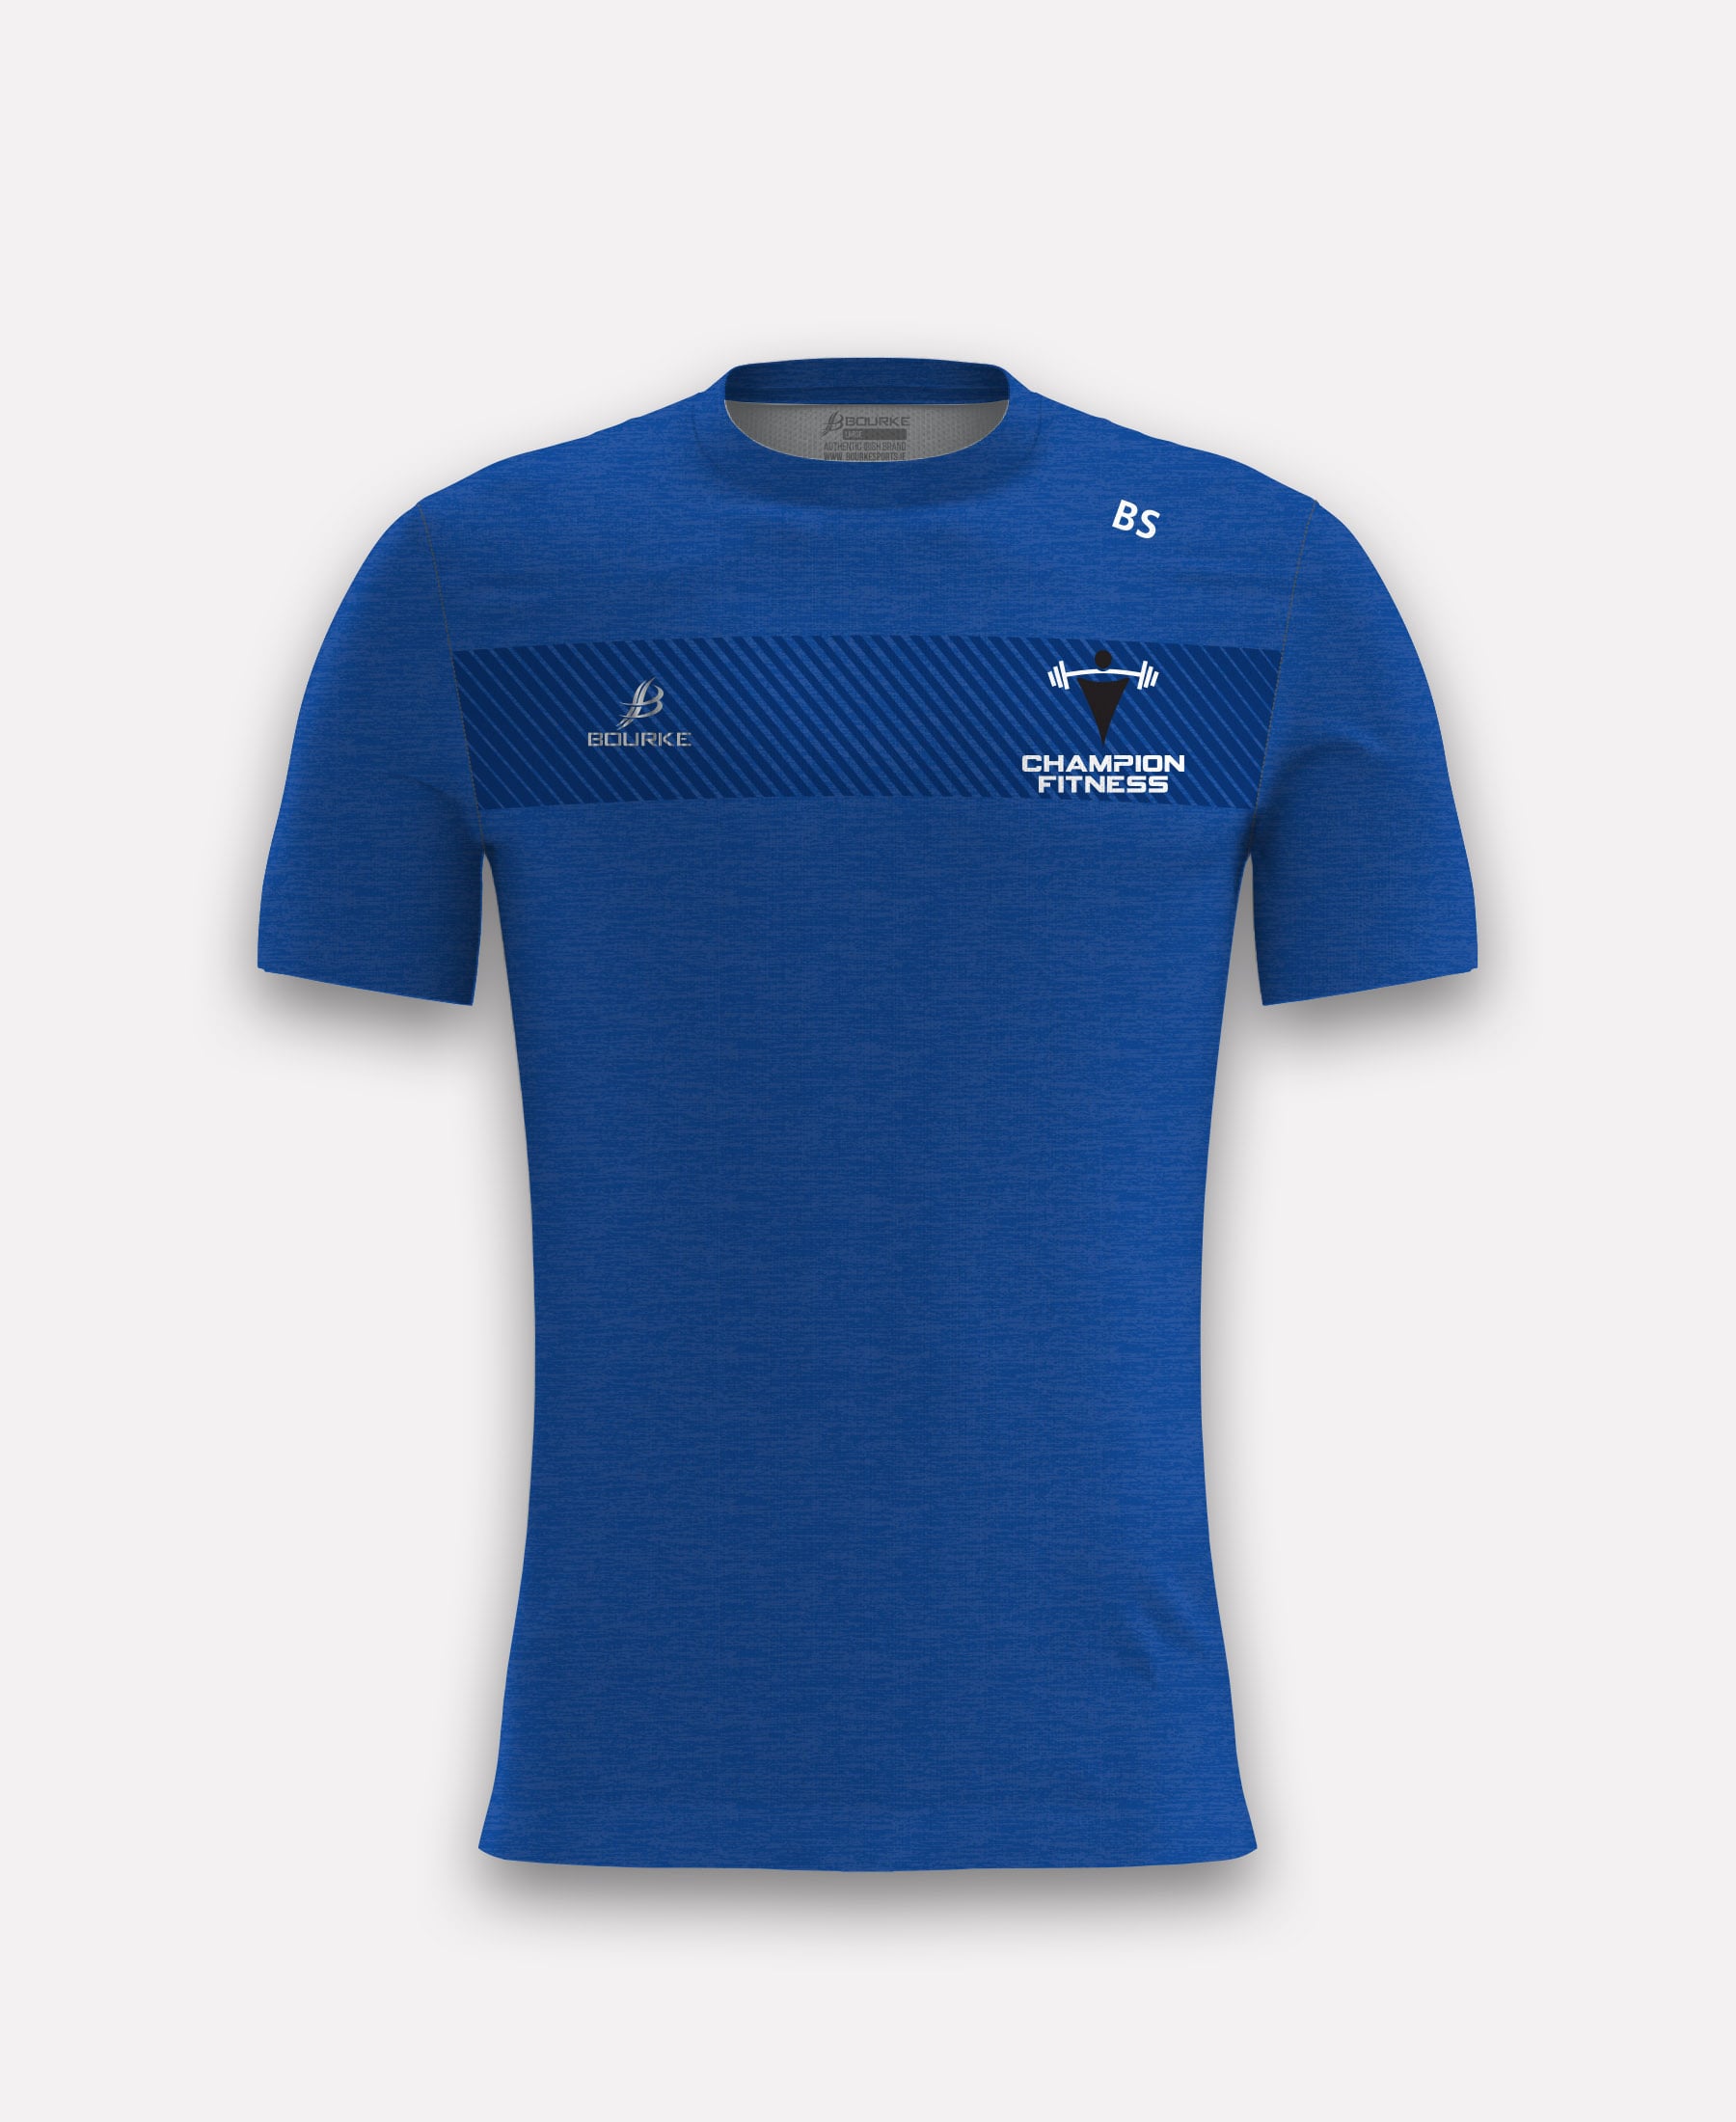 Champion Fitness TACA T-Shirt (Blue)